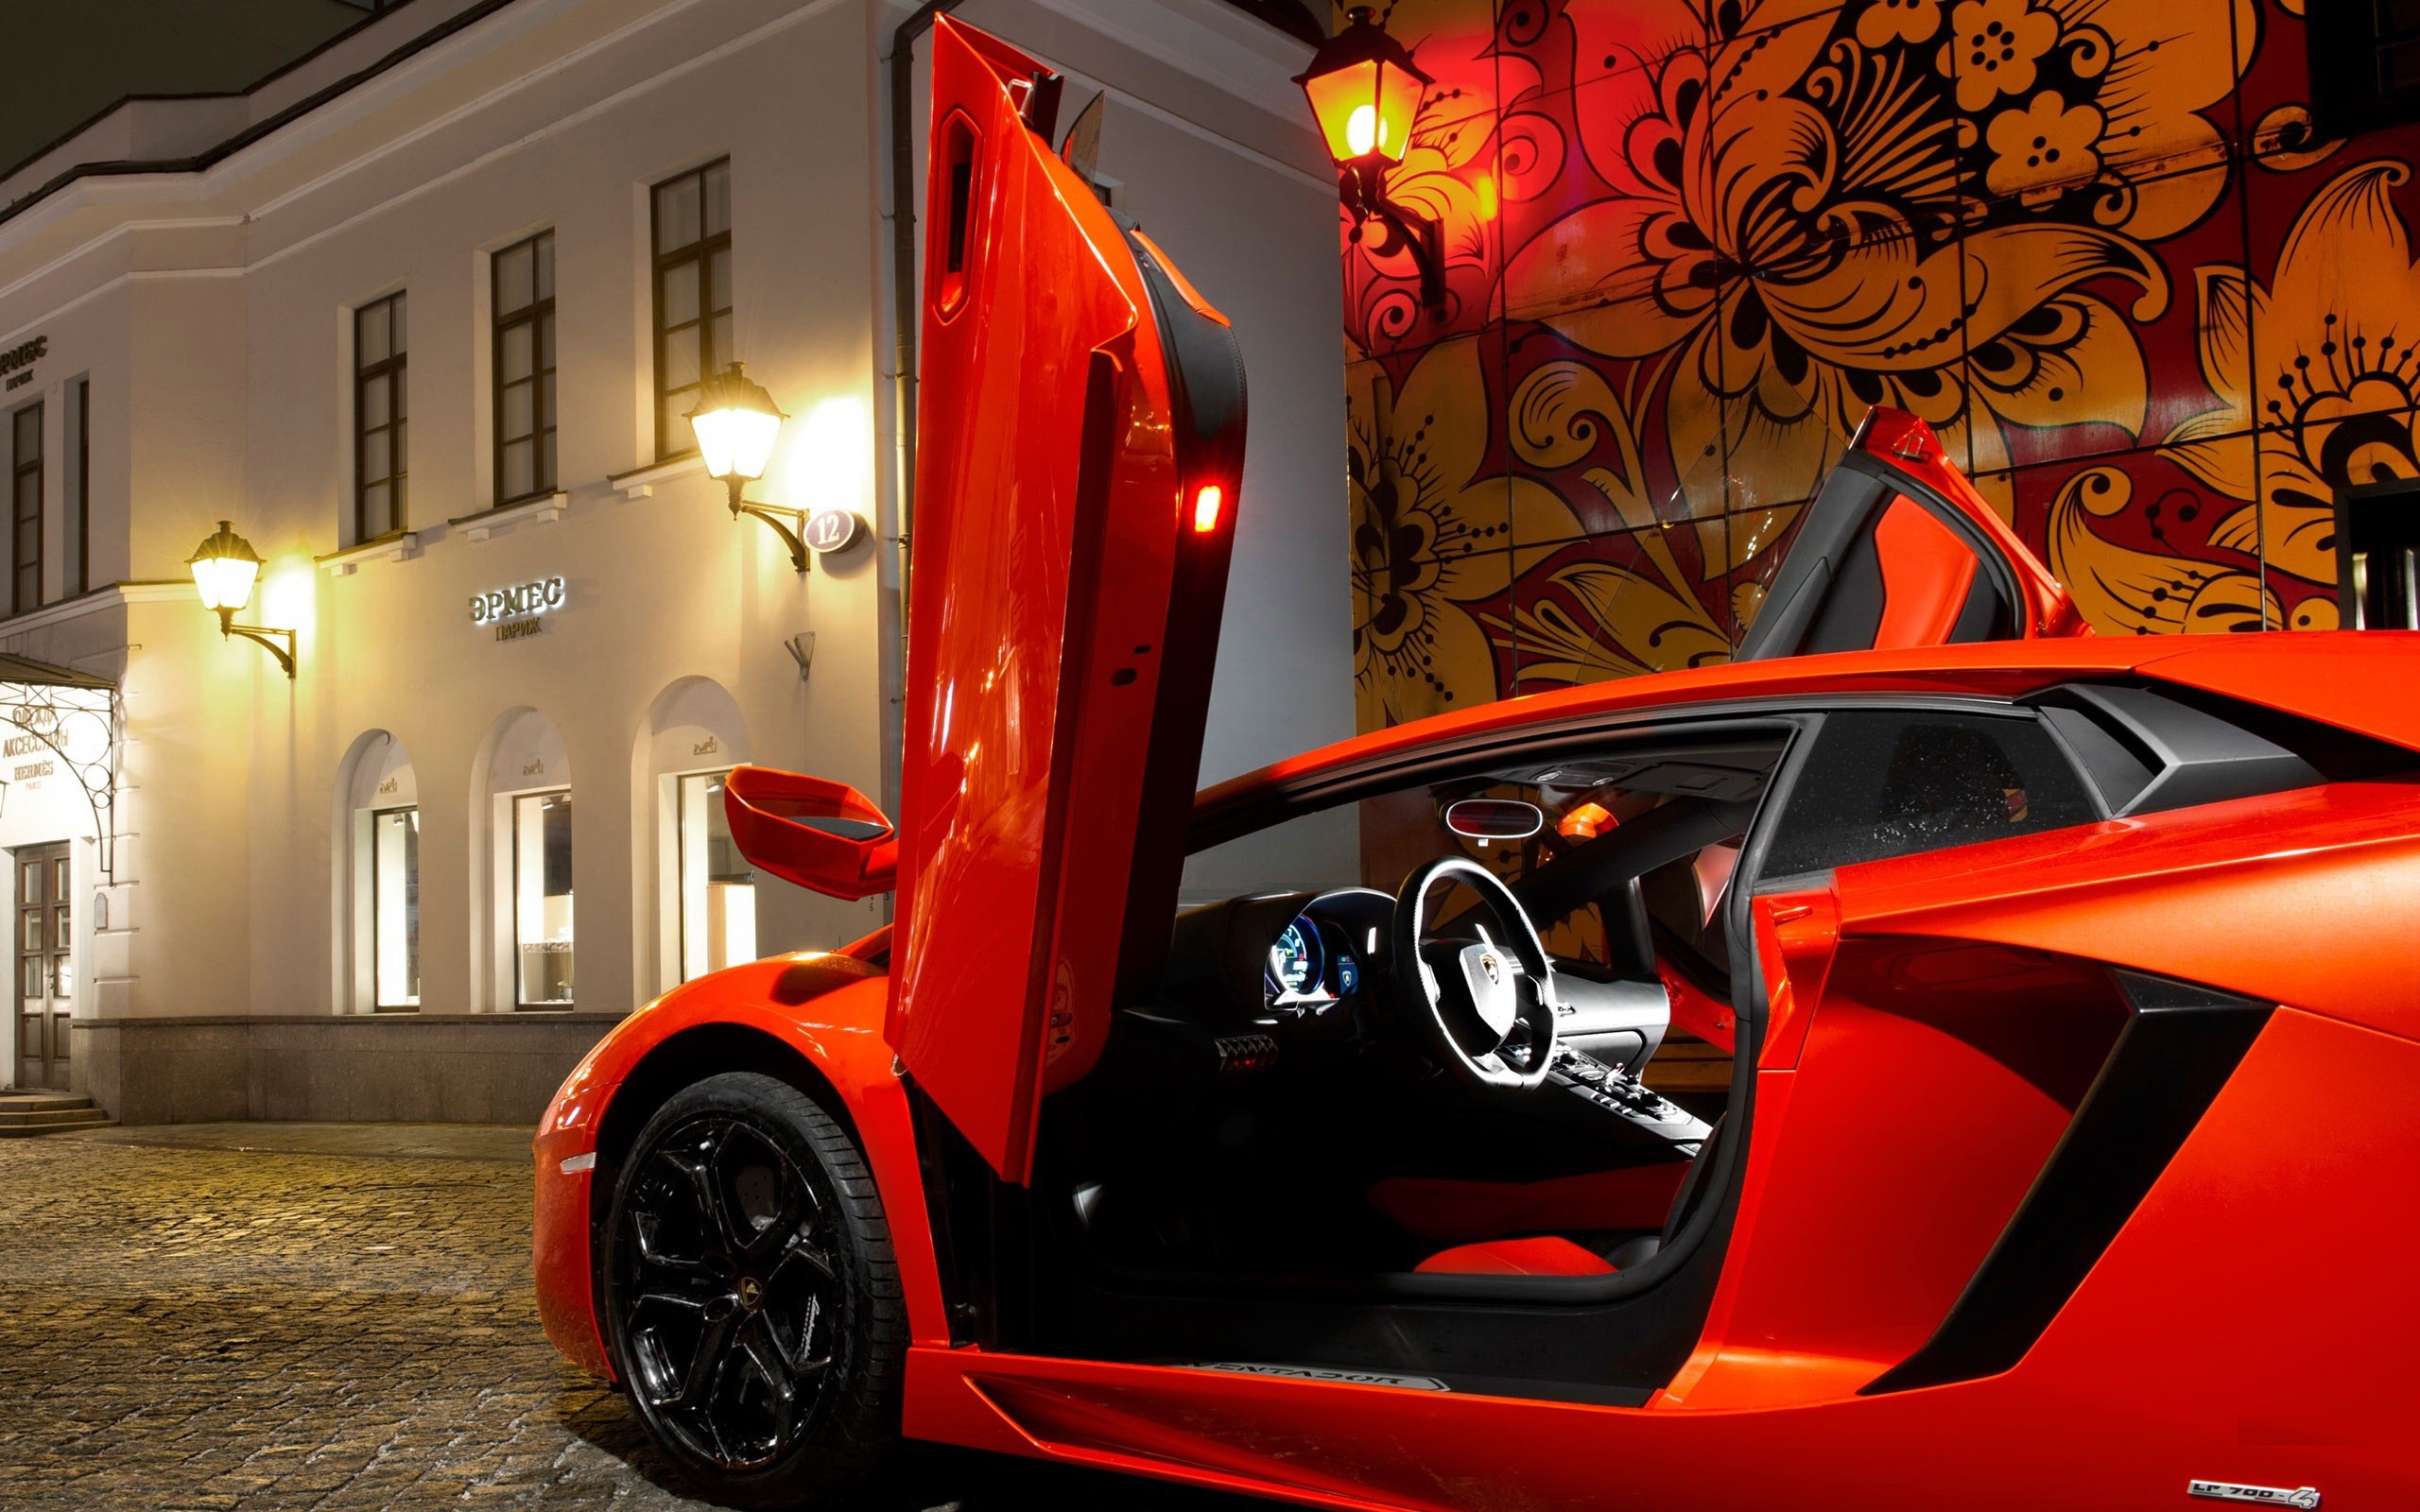 General 2560x1600 car Lamborghini scissor doors vehicle supercars red cars Lamborghini Aventador